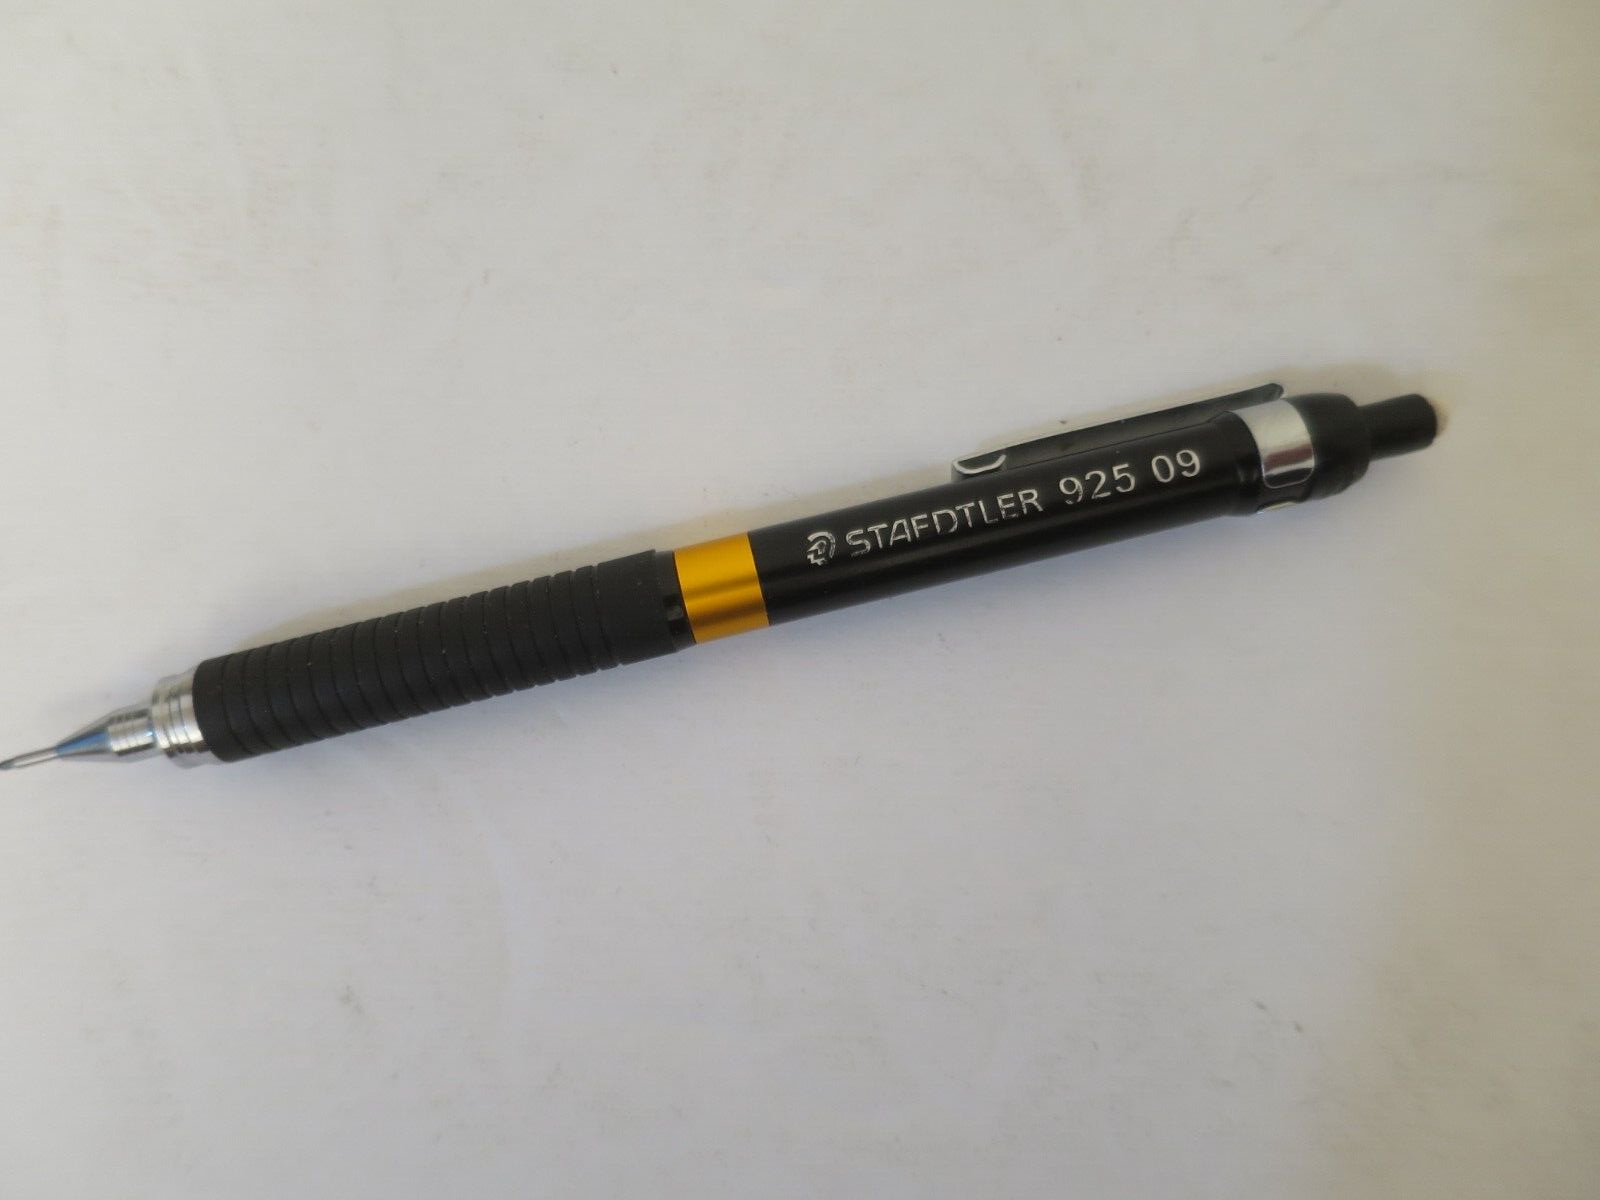 Vintage STAEDTLER 925 09 Mechanical Pencil 0.9mm Black Series w Gold Center Band